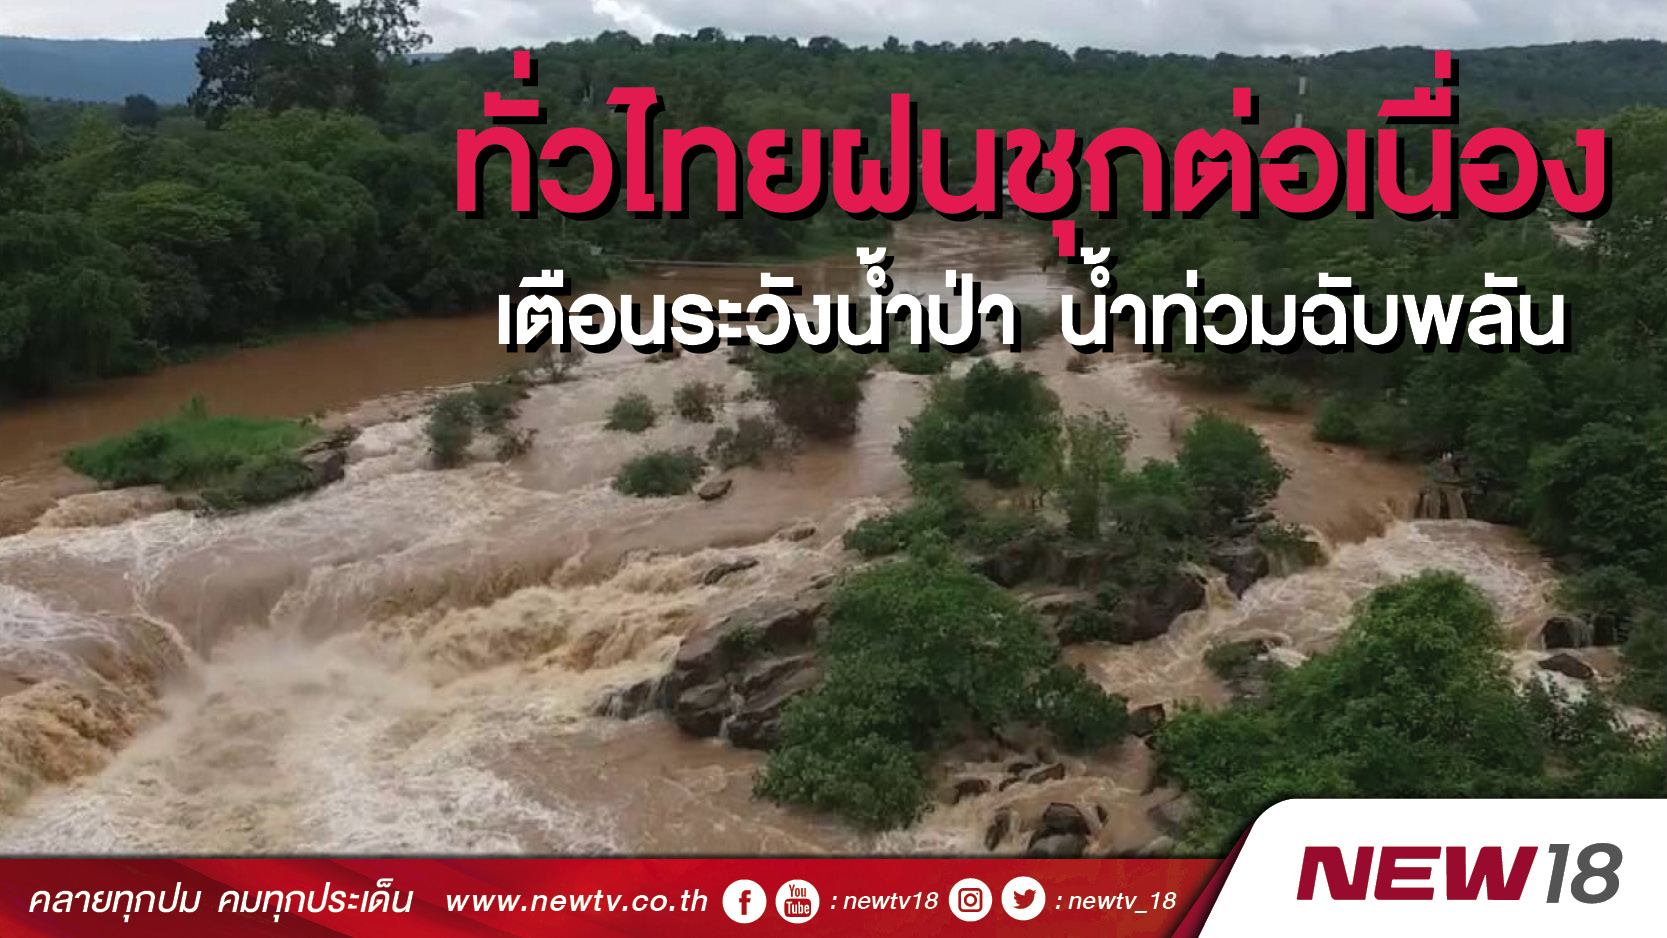  ทั่วไทยฝนชุกต่อเนื่อง  เตือนระวังน้ำป่า น้ำท่วมฉับพลัน